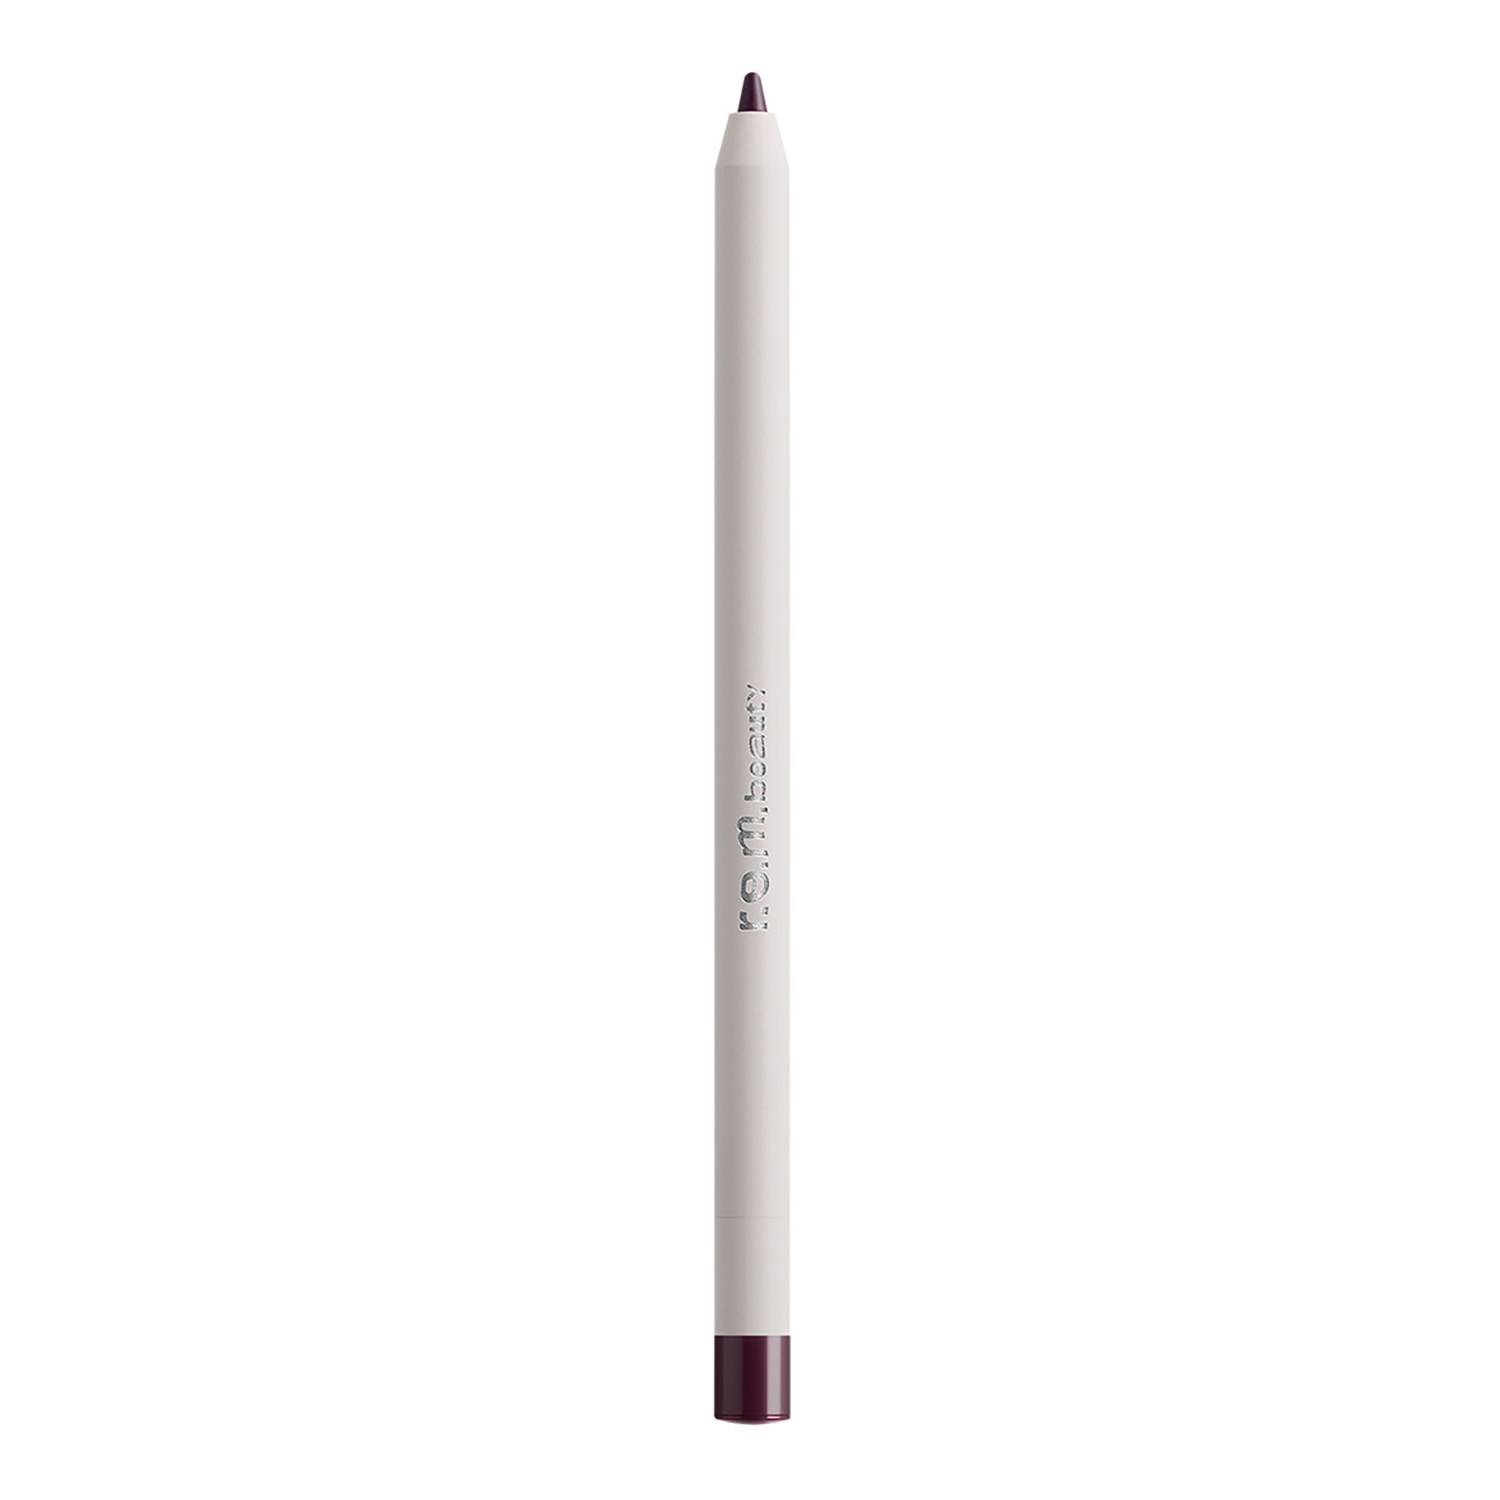 Rem Beauty At The Borderline Lip Liner Pencil 0.5G Bounce Violet Burgundy